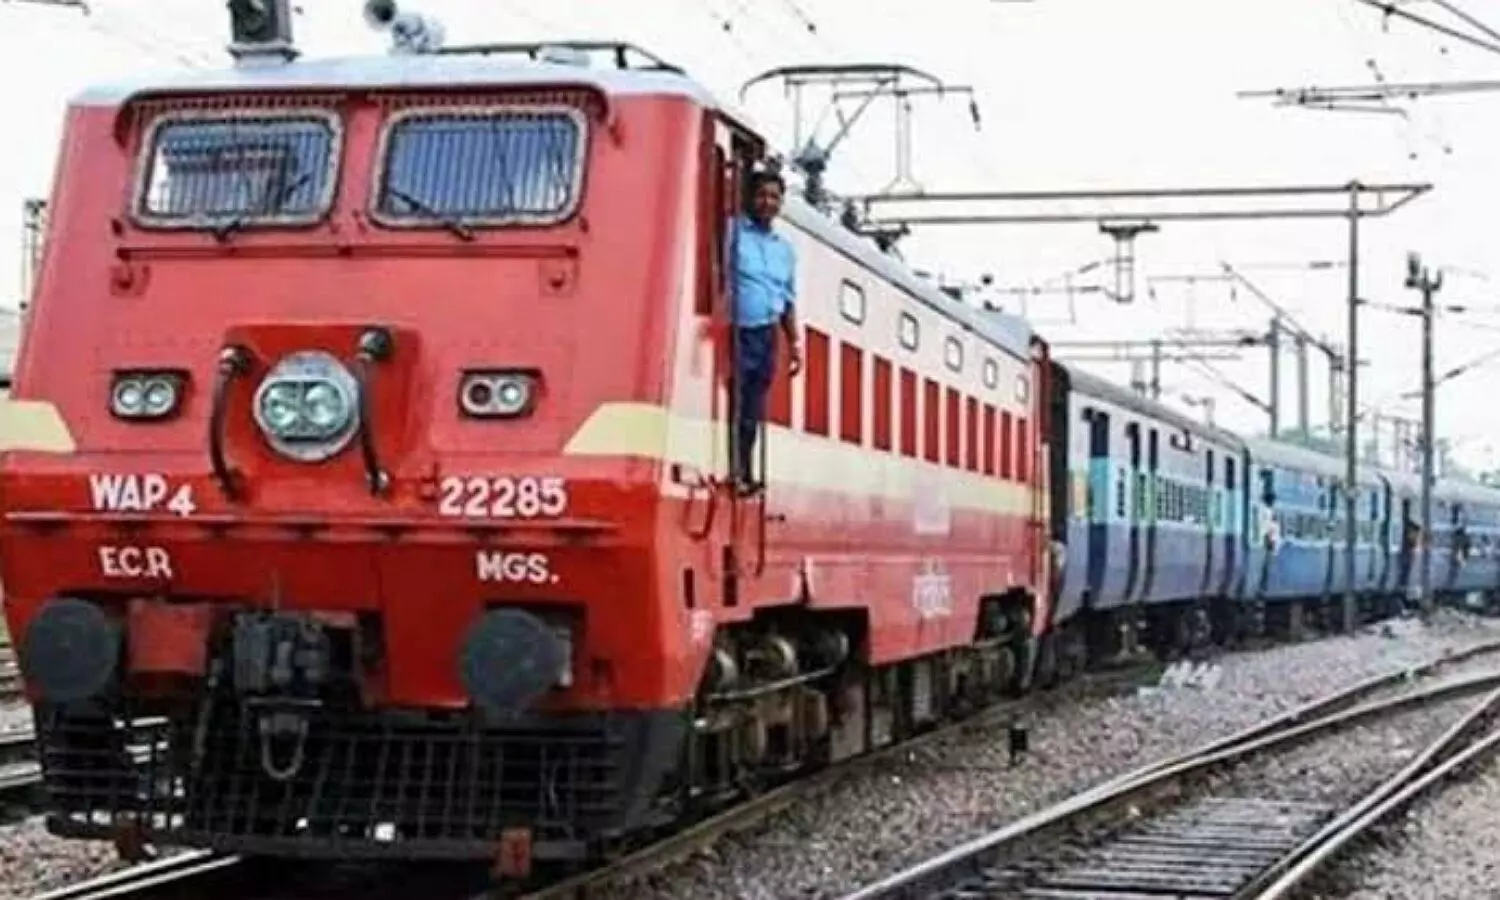 Indian Railways News: त्योहारों में  रेल यात्रा करने वालों के लिए खुशखबरी, 450 से अधिक स्पेशल ट्रेन चलेंगी, UP के लिए खास तैयारी